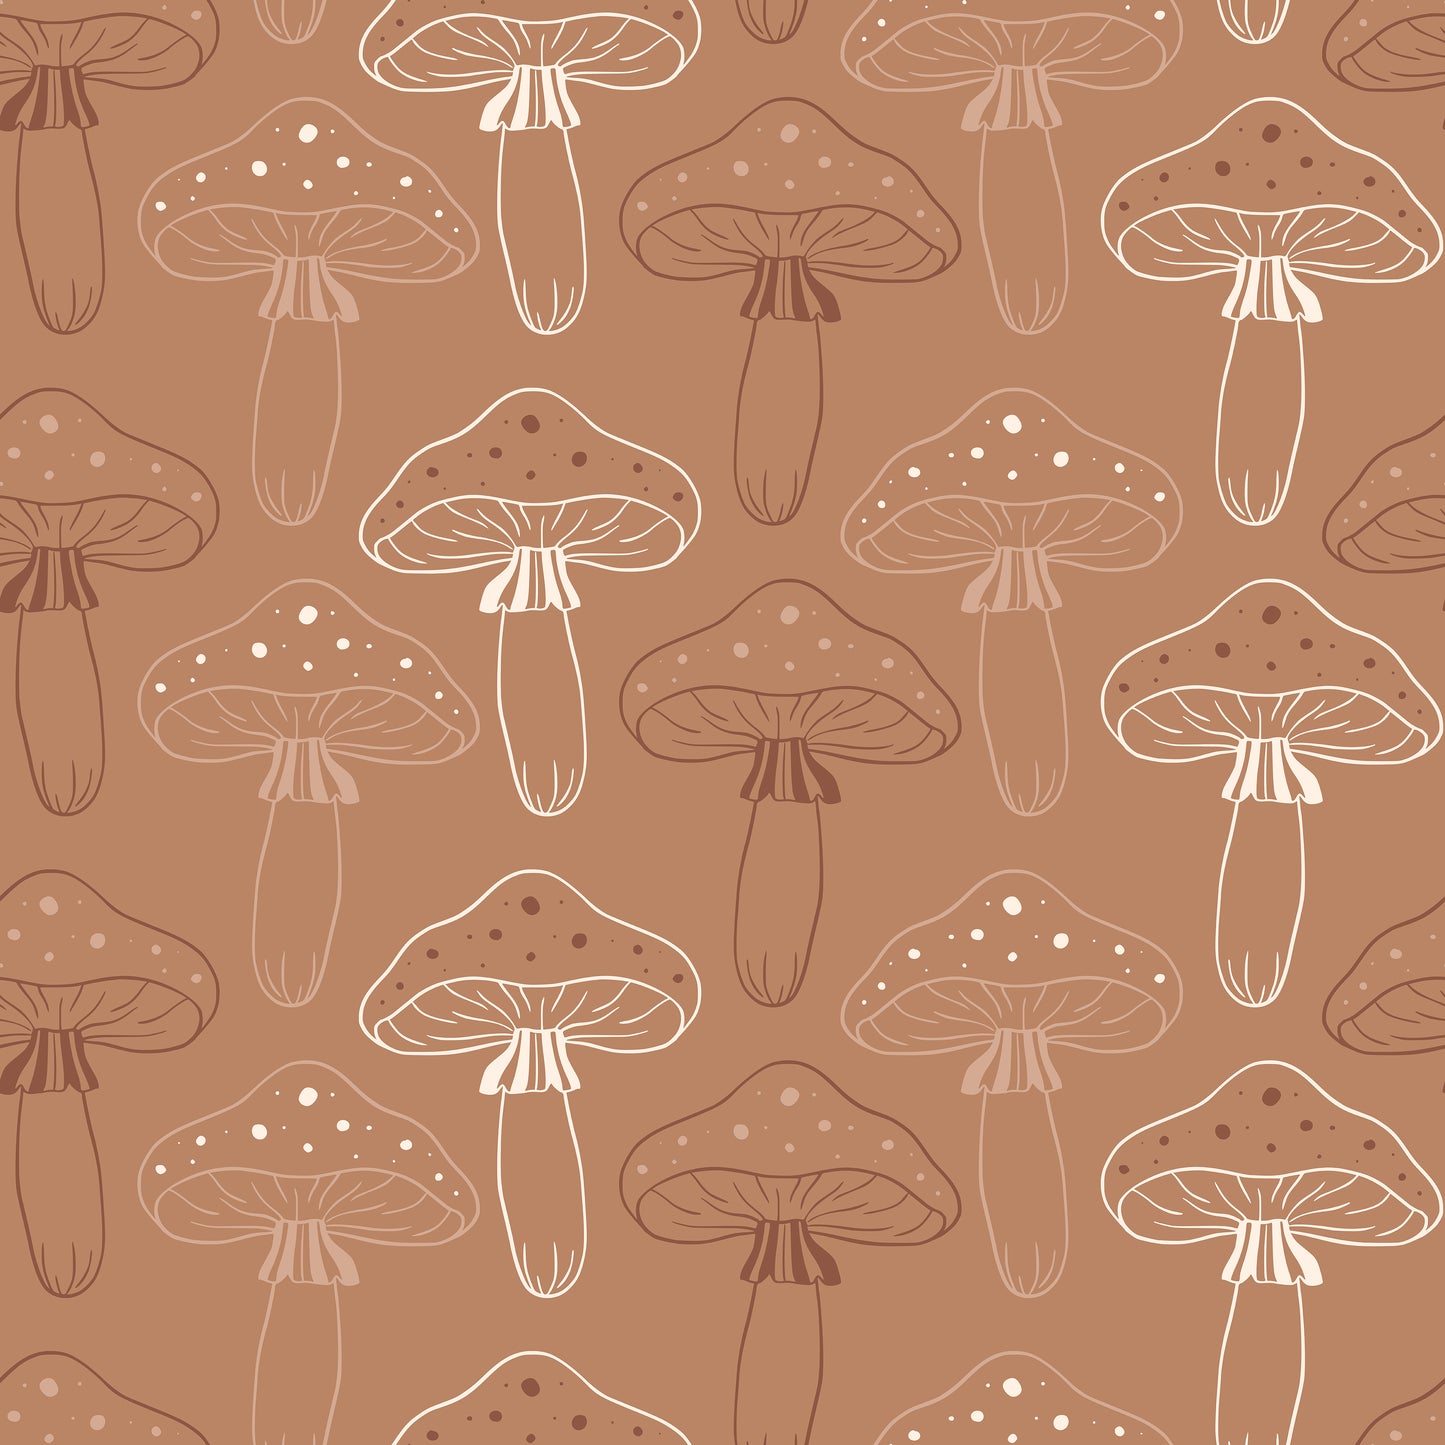 Mushroom Fungi Toadstool Outlines Self Adhesive Vinyl